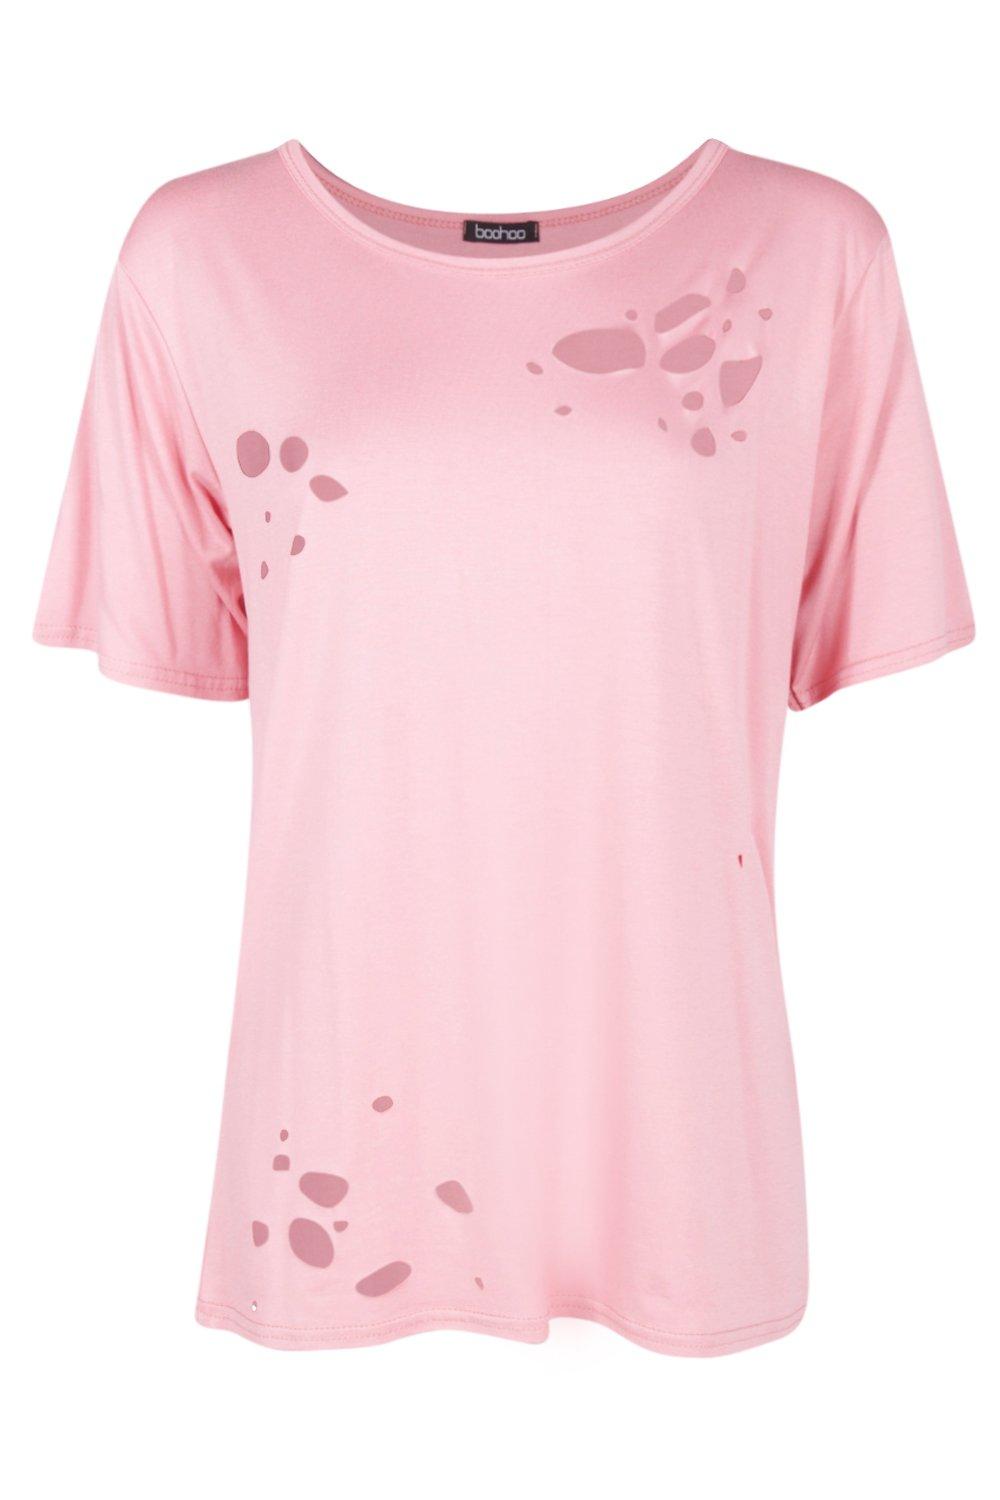 Boohoo Womens Maisie Distressed T-Shirt | eBay